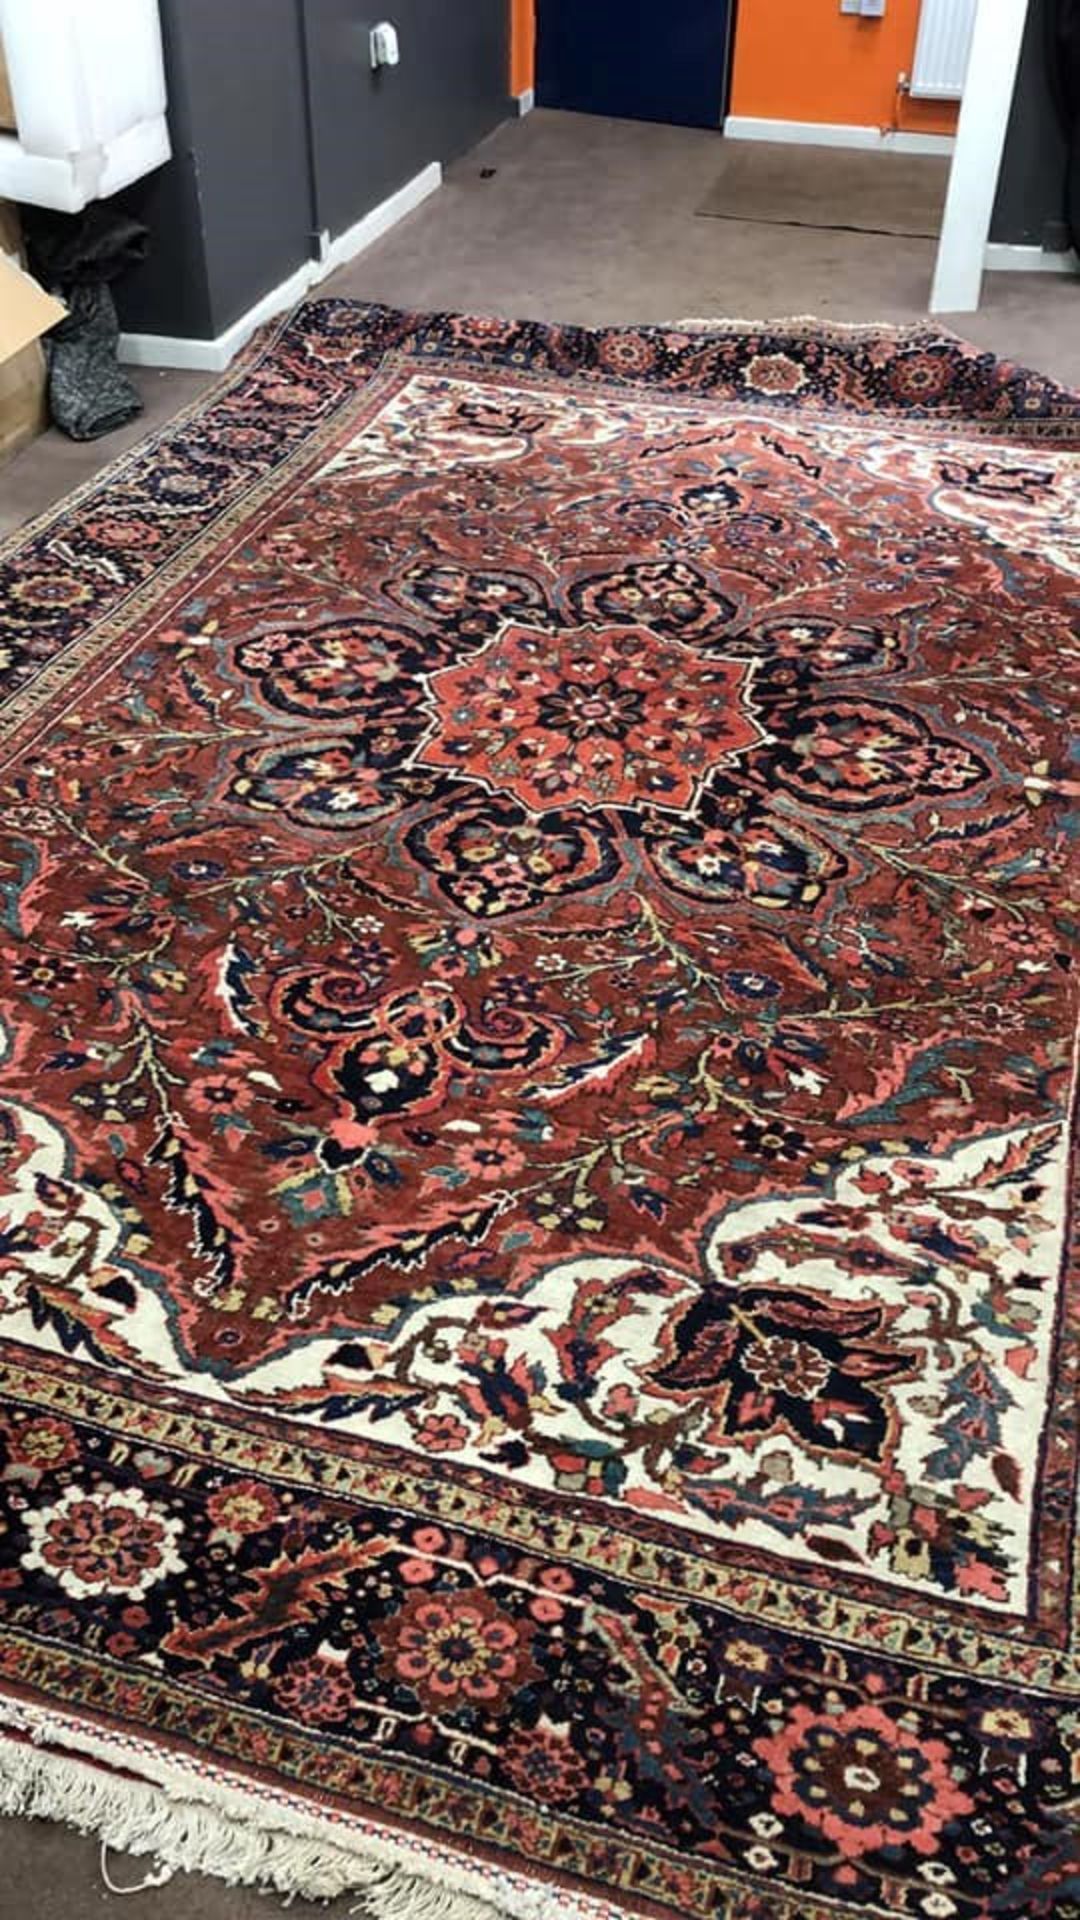 Iranian Carpet